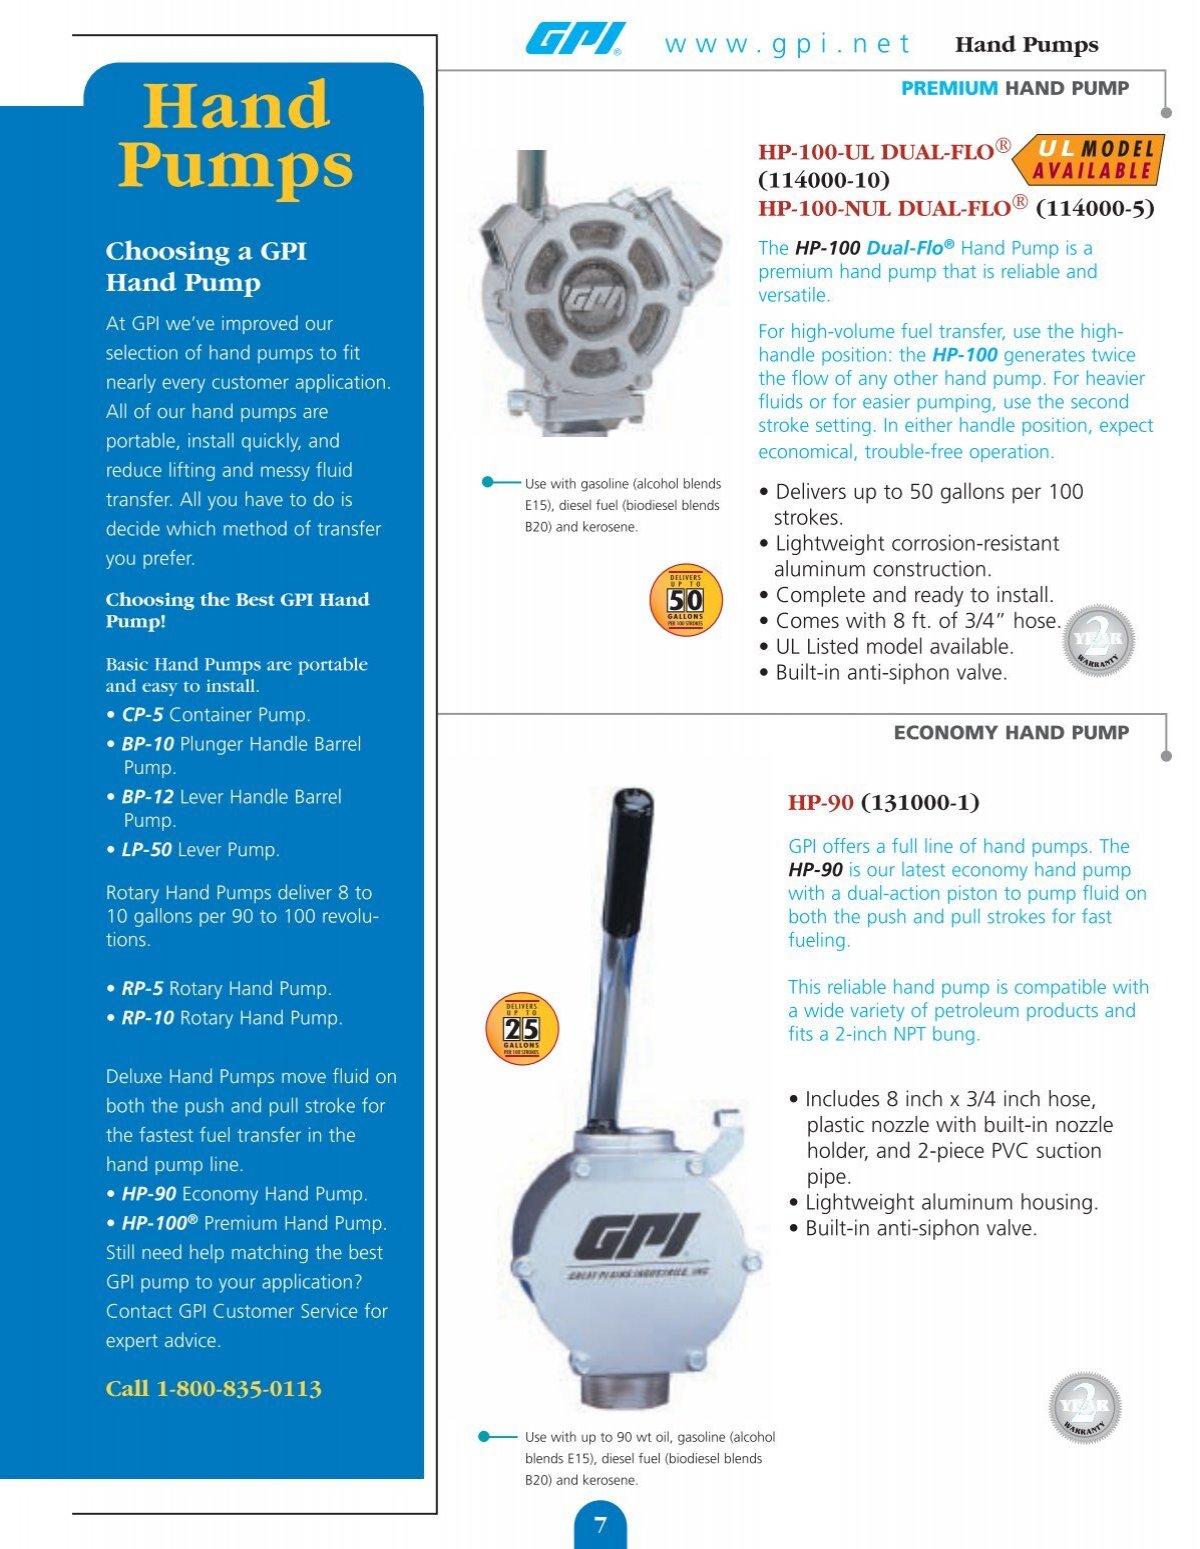 GPI CP-5 Piston Hand Pump, 8 Oz per Stroke